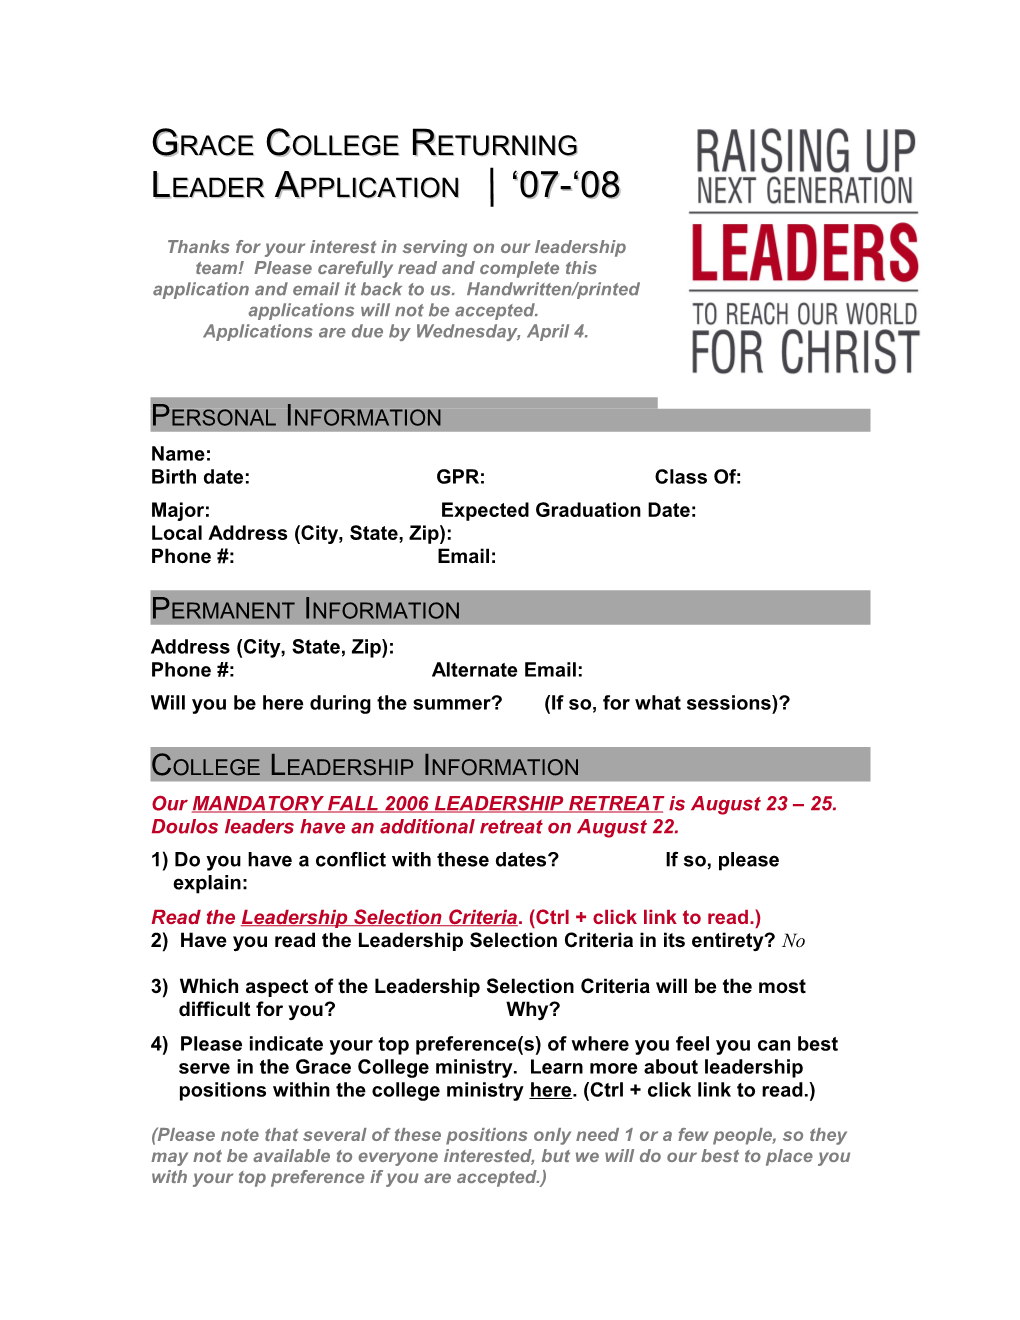 Grace College Returning Leader Application